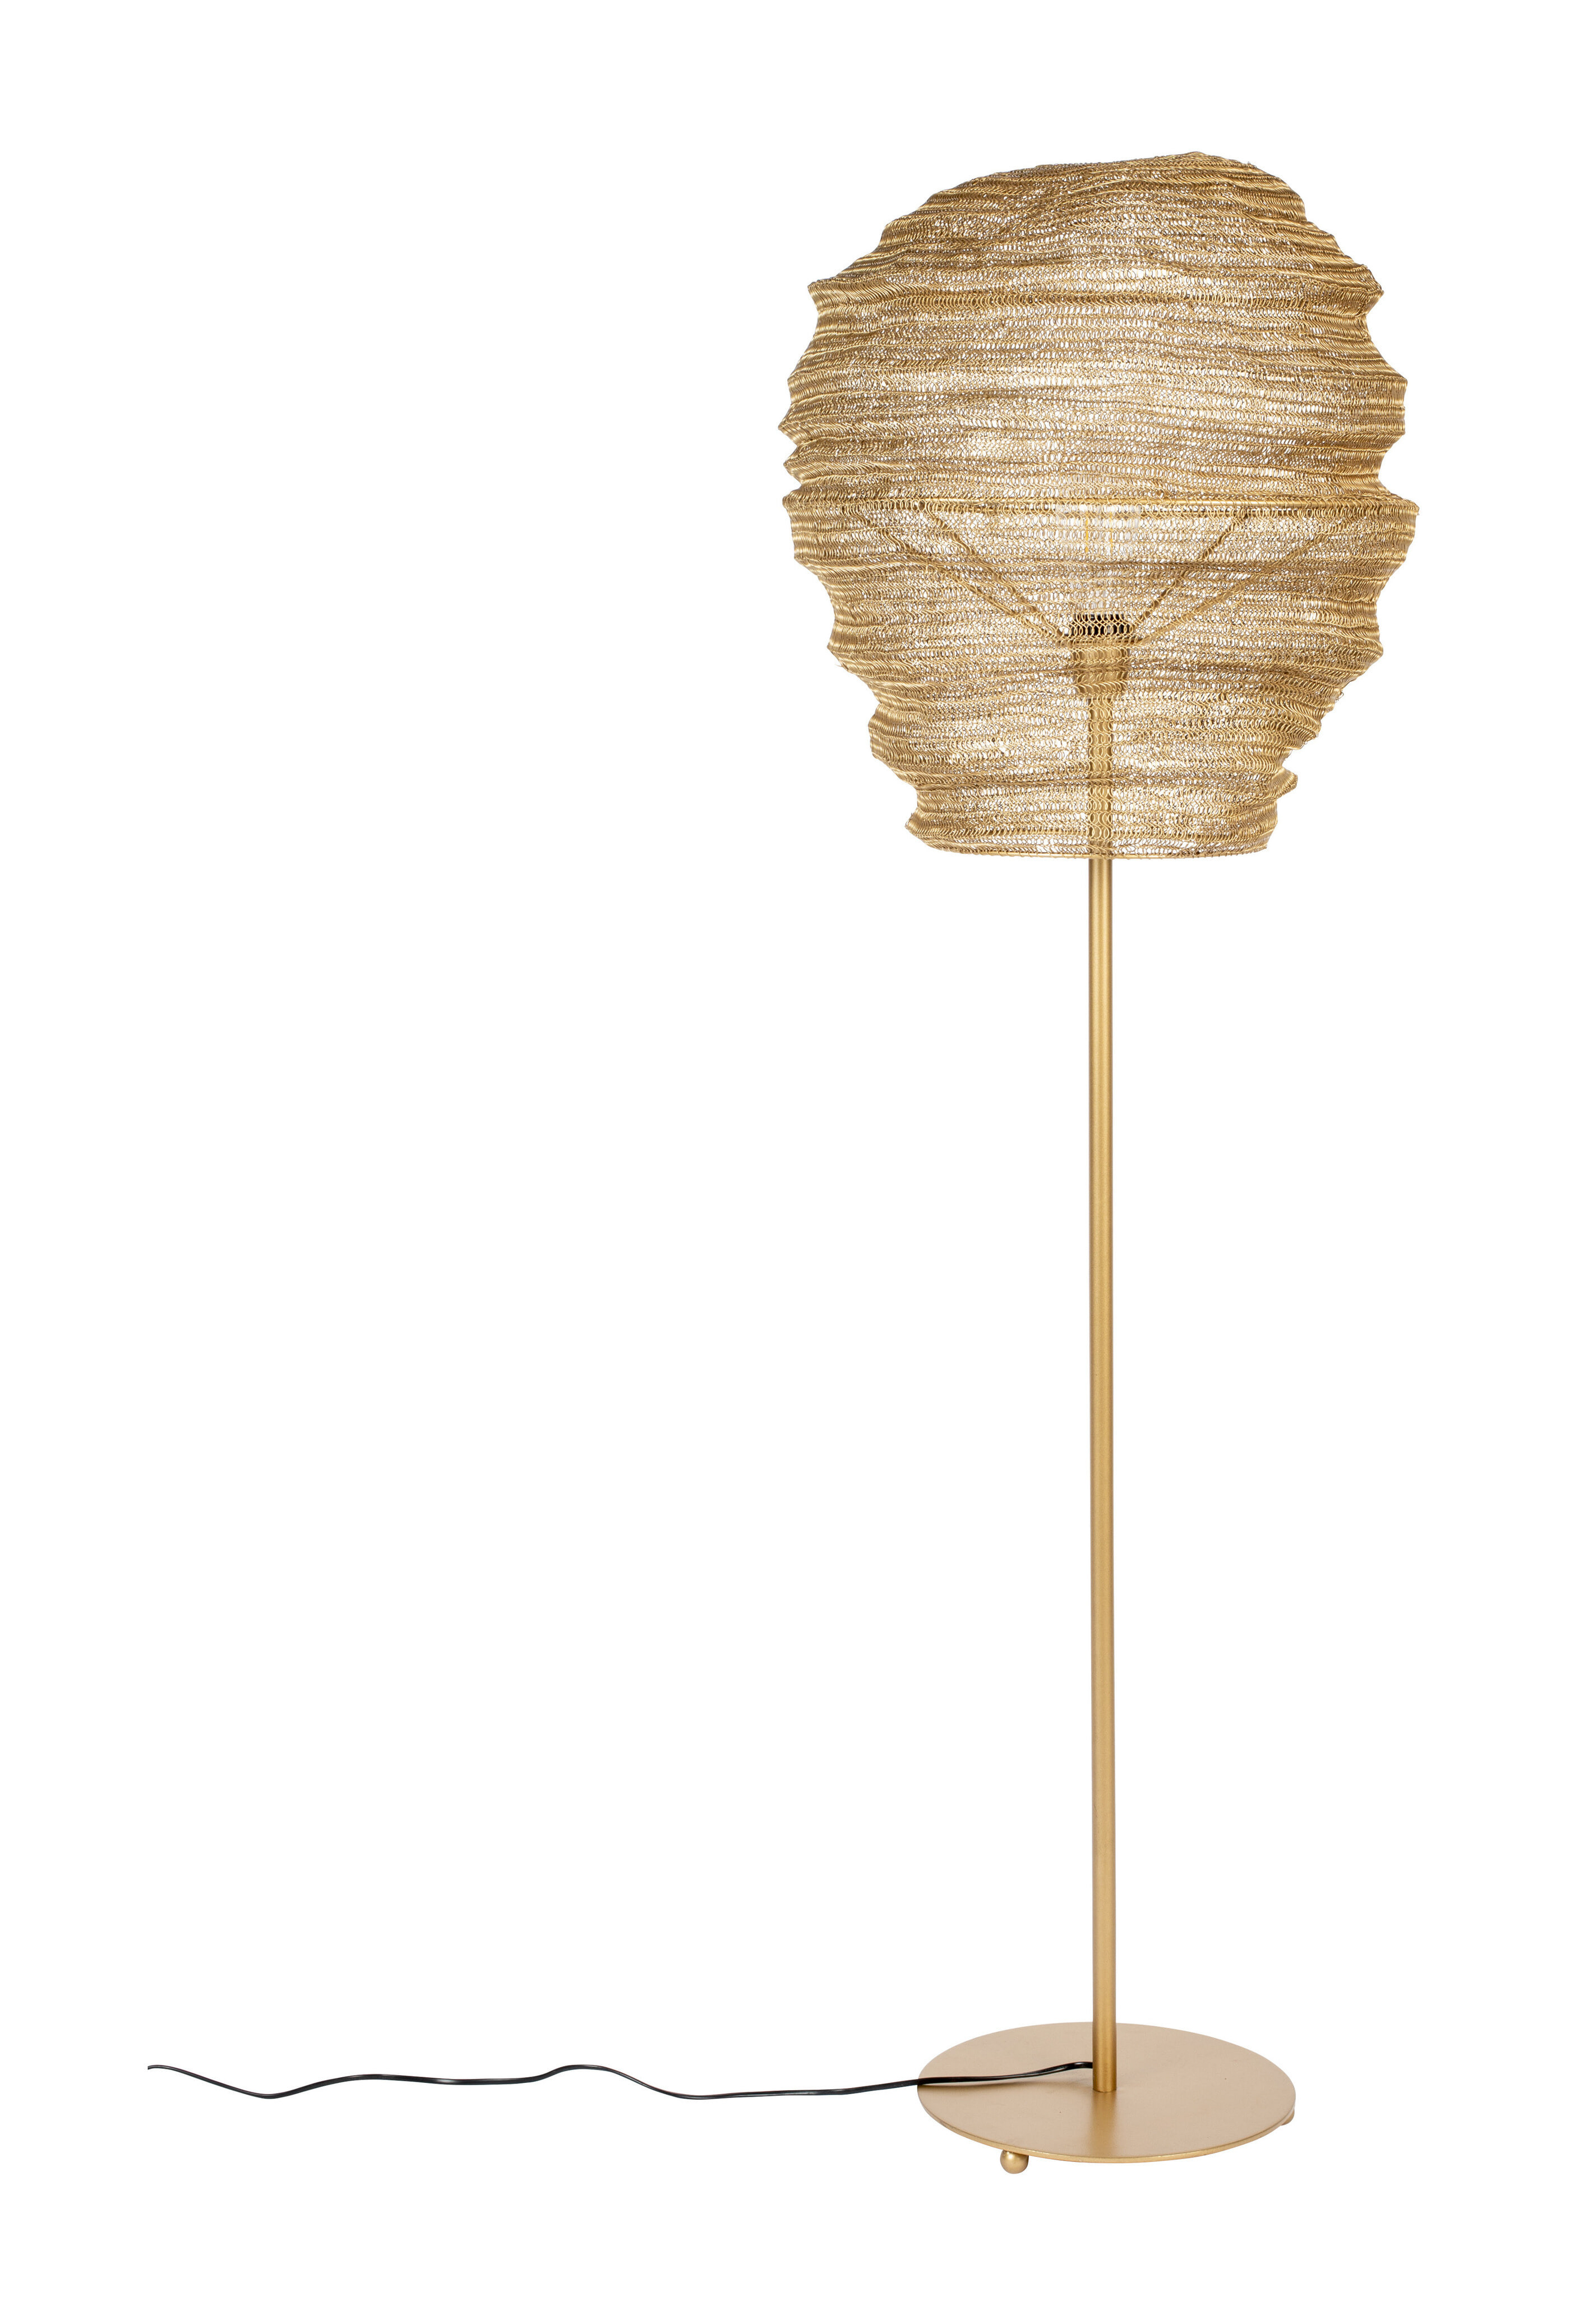 ZILT Vloerlamp Deepika, 154cm - Goud